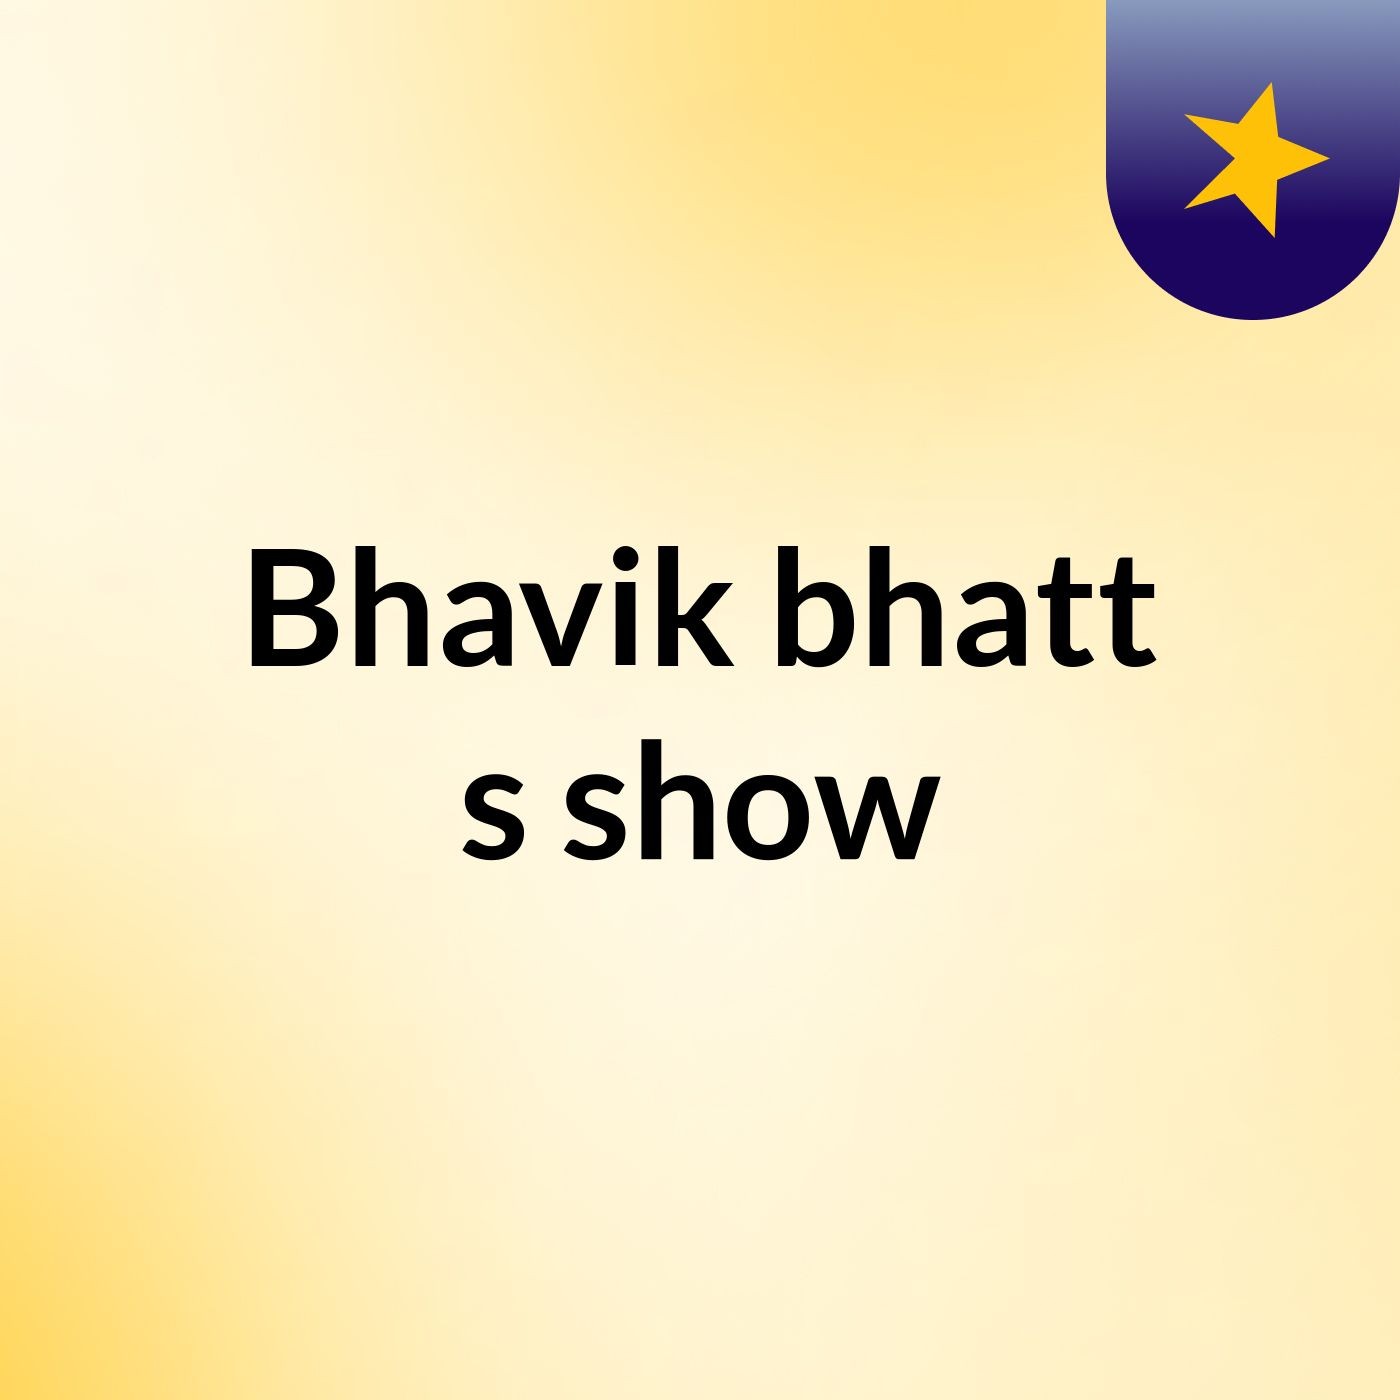 Episode 1- Bhavik bhatt's show